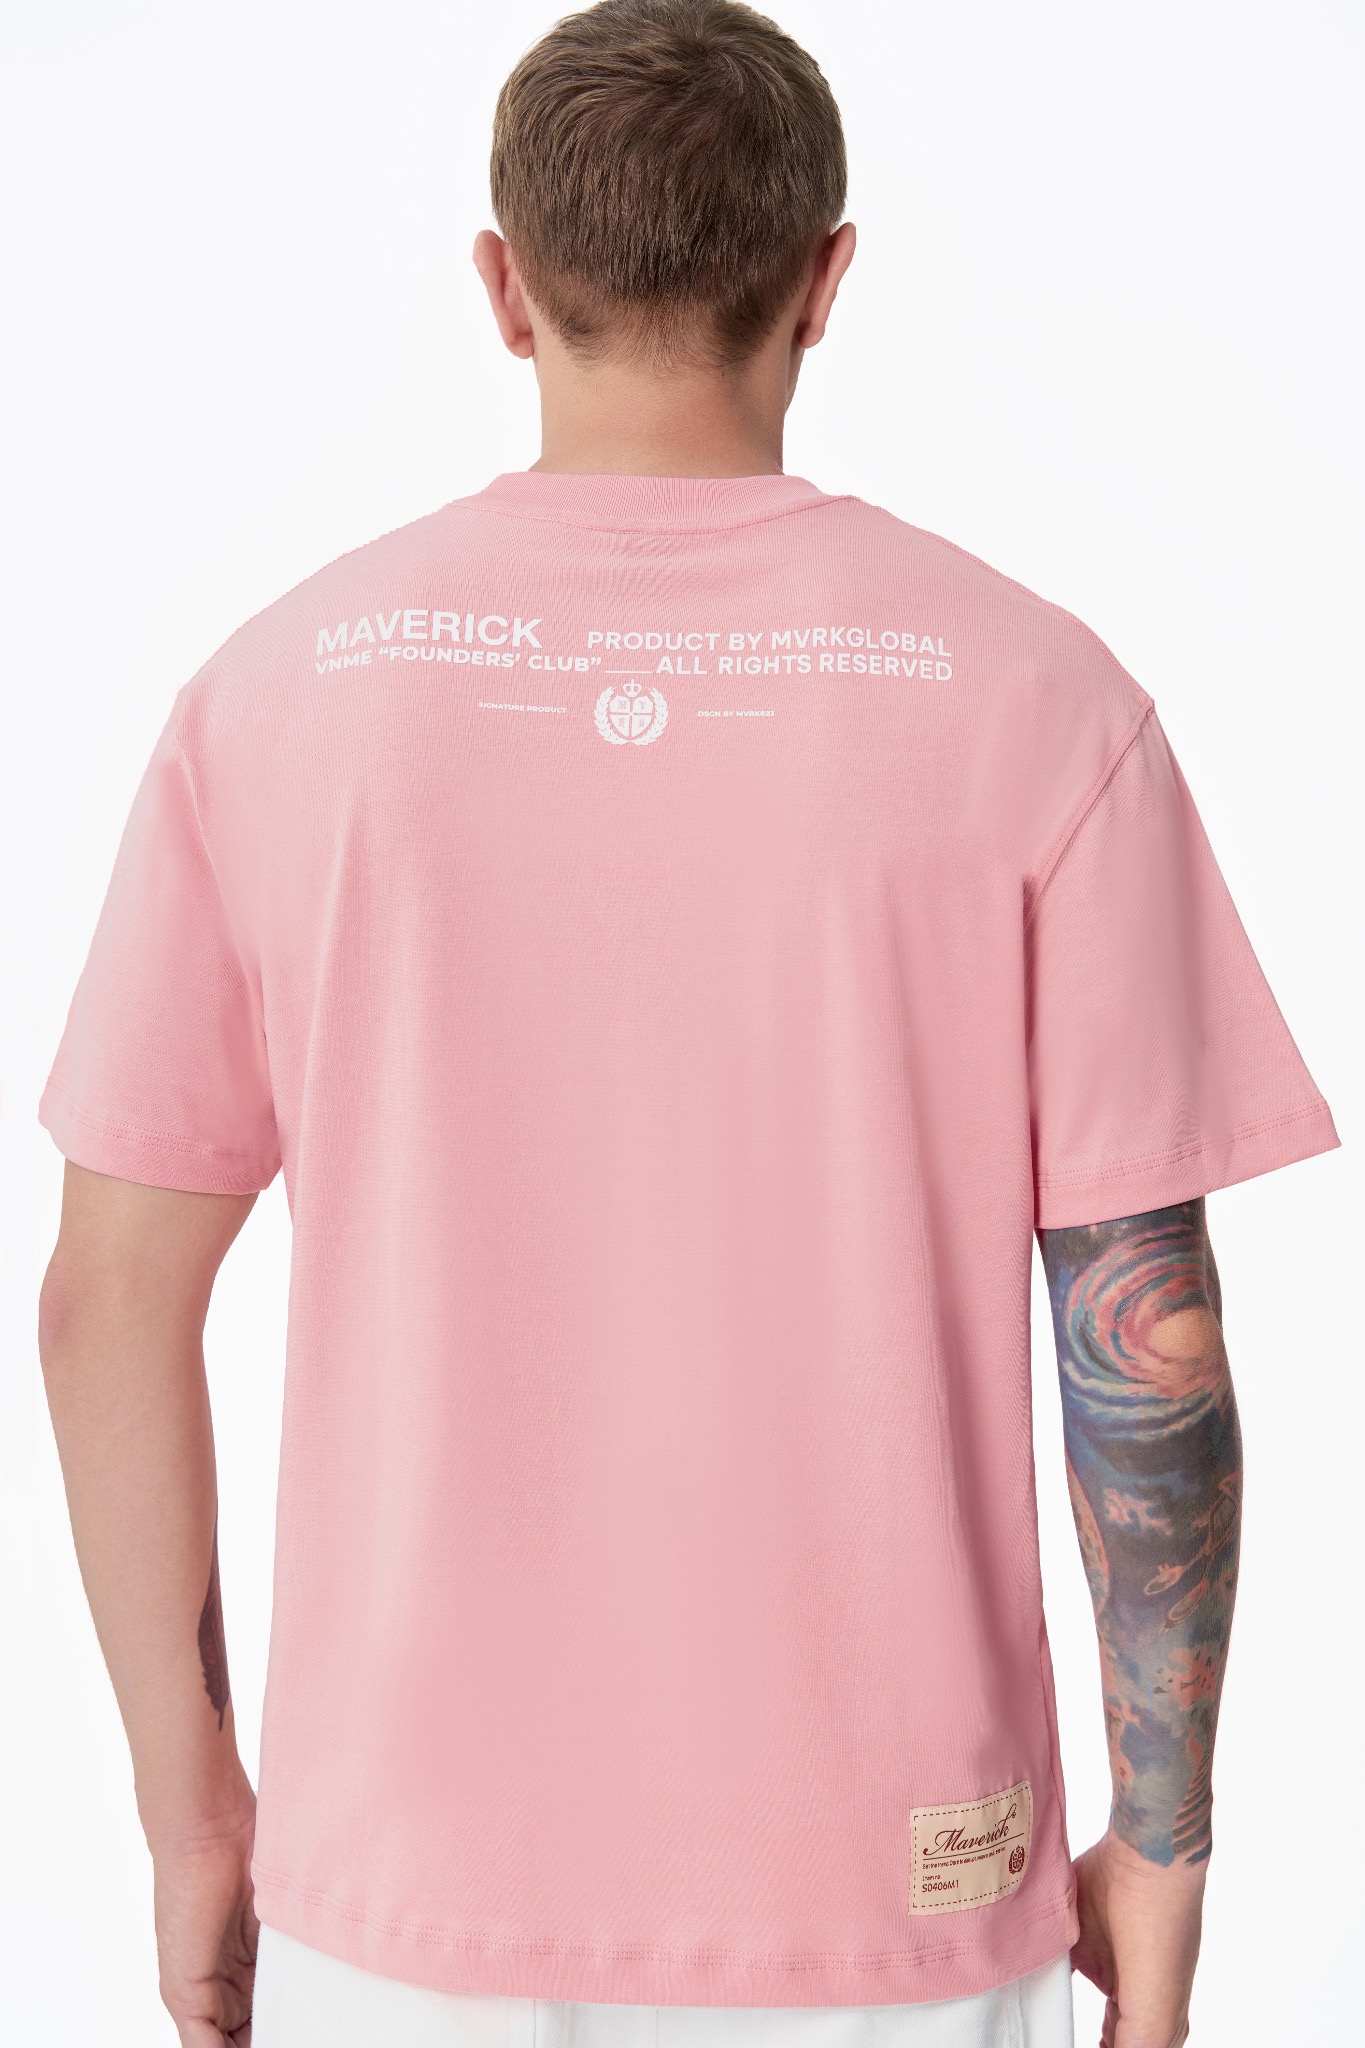 ao-thun-maverick-founders-club-cobalt-light-pink || Light pink